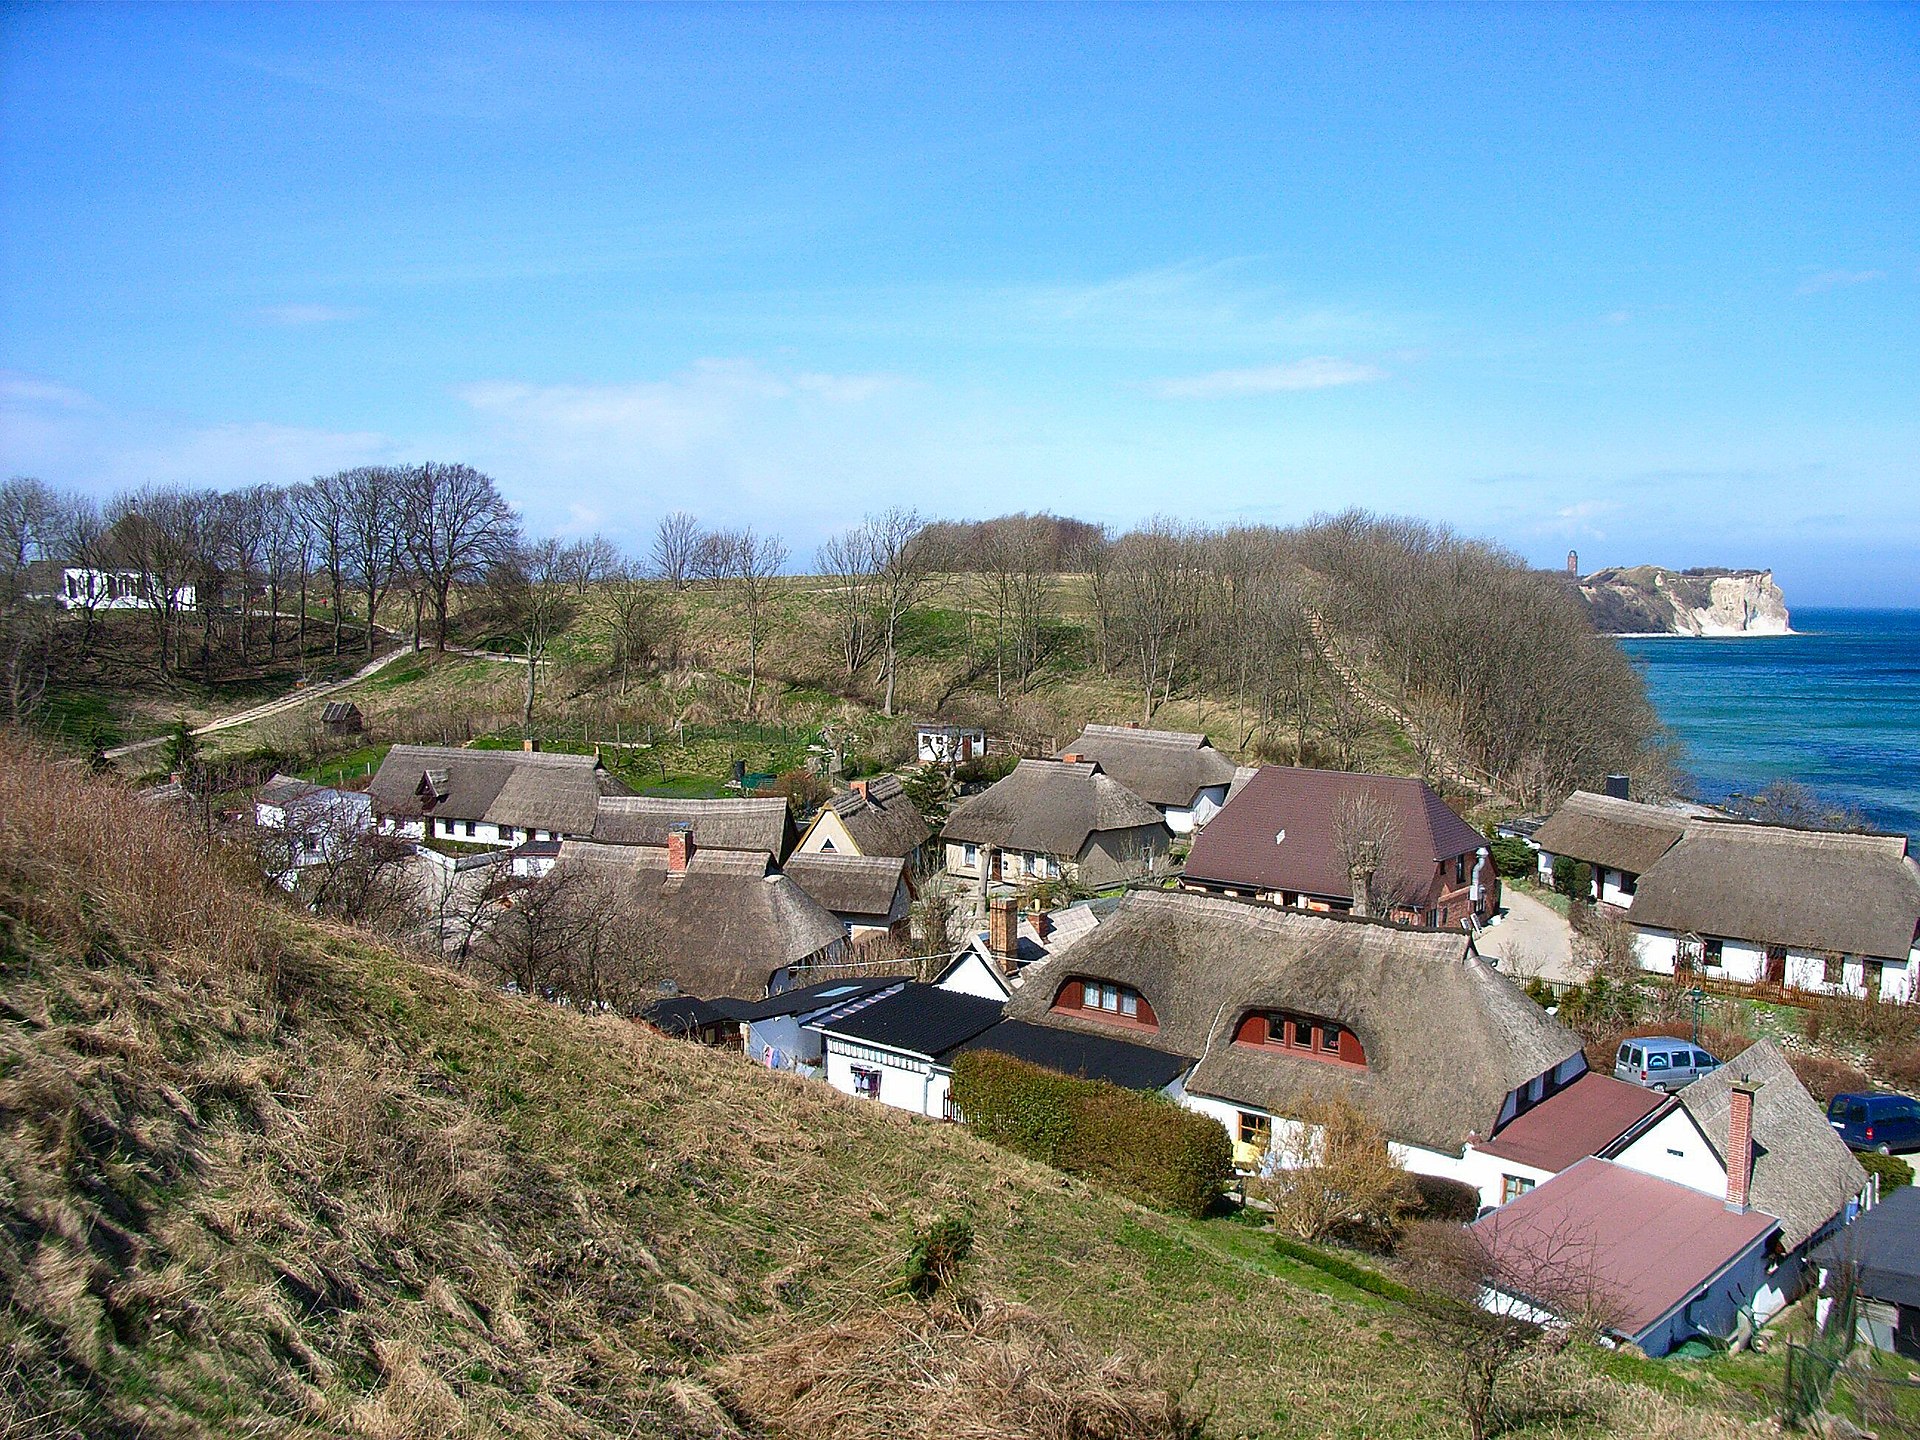 Das Fischerdorf Vitt auf der Insel Rügen Im Hintergrund Kap Arkona (Bild Lapplaender - Eigenes Werk)